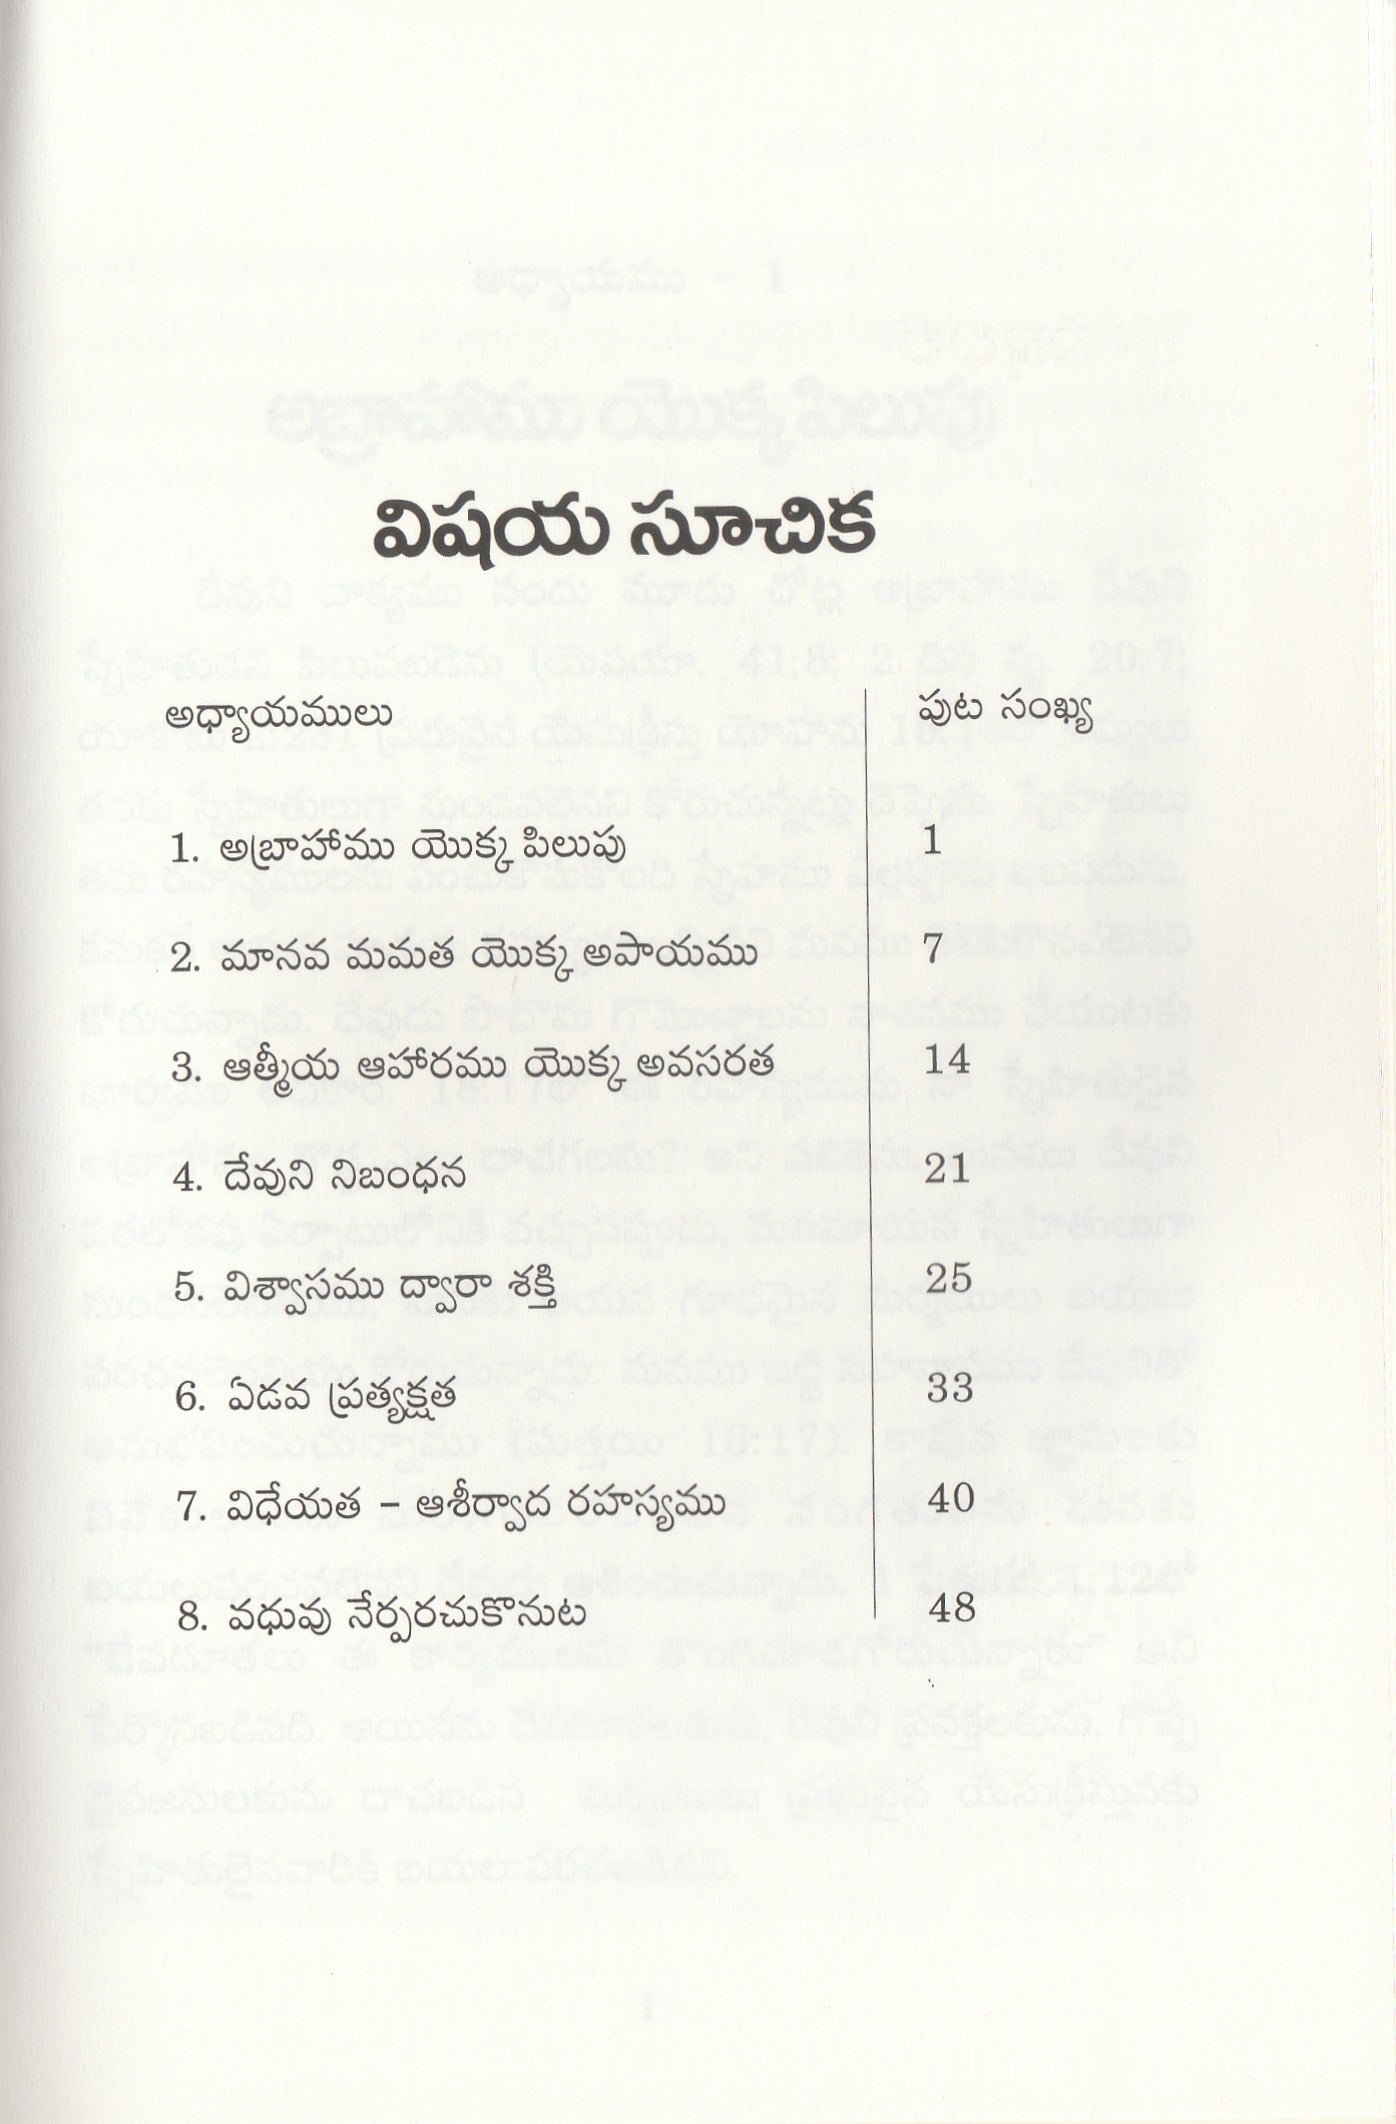 Walk Before Me by Bro Bakht Singh in Telugu | Telugu Bakht Singh Books | Telugu Christian Books